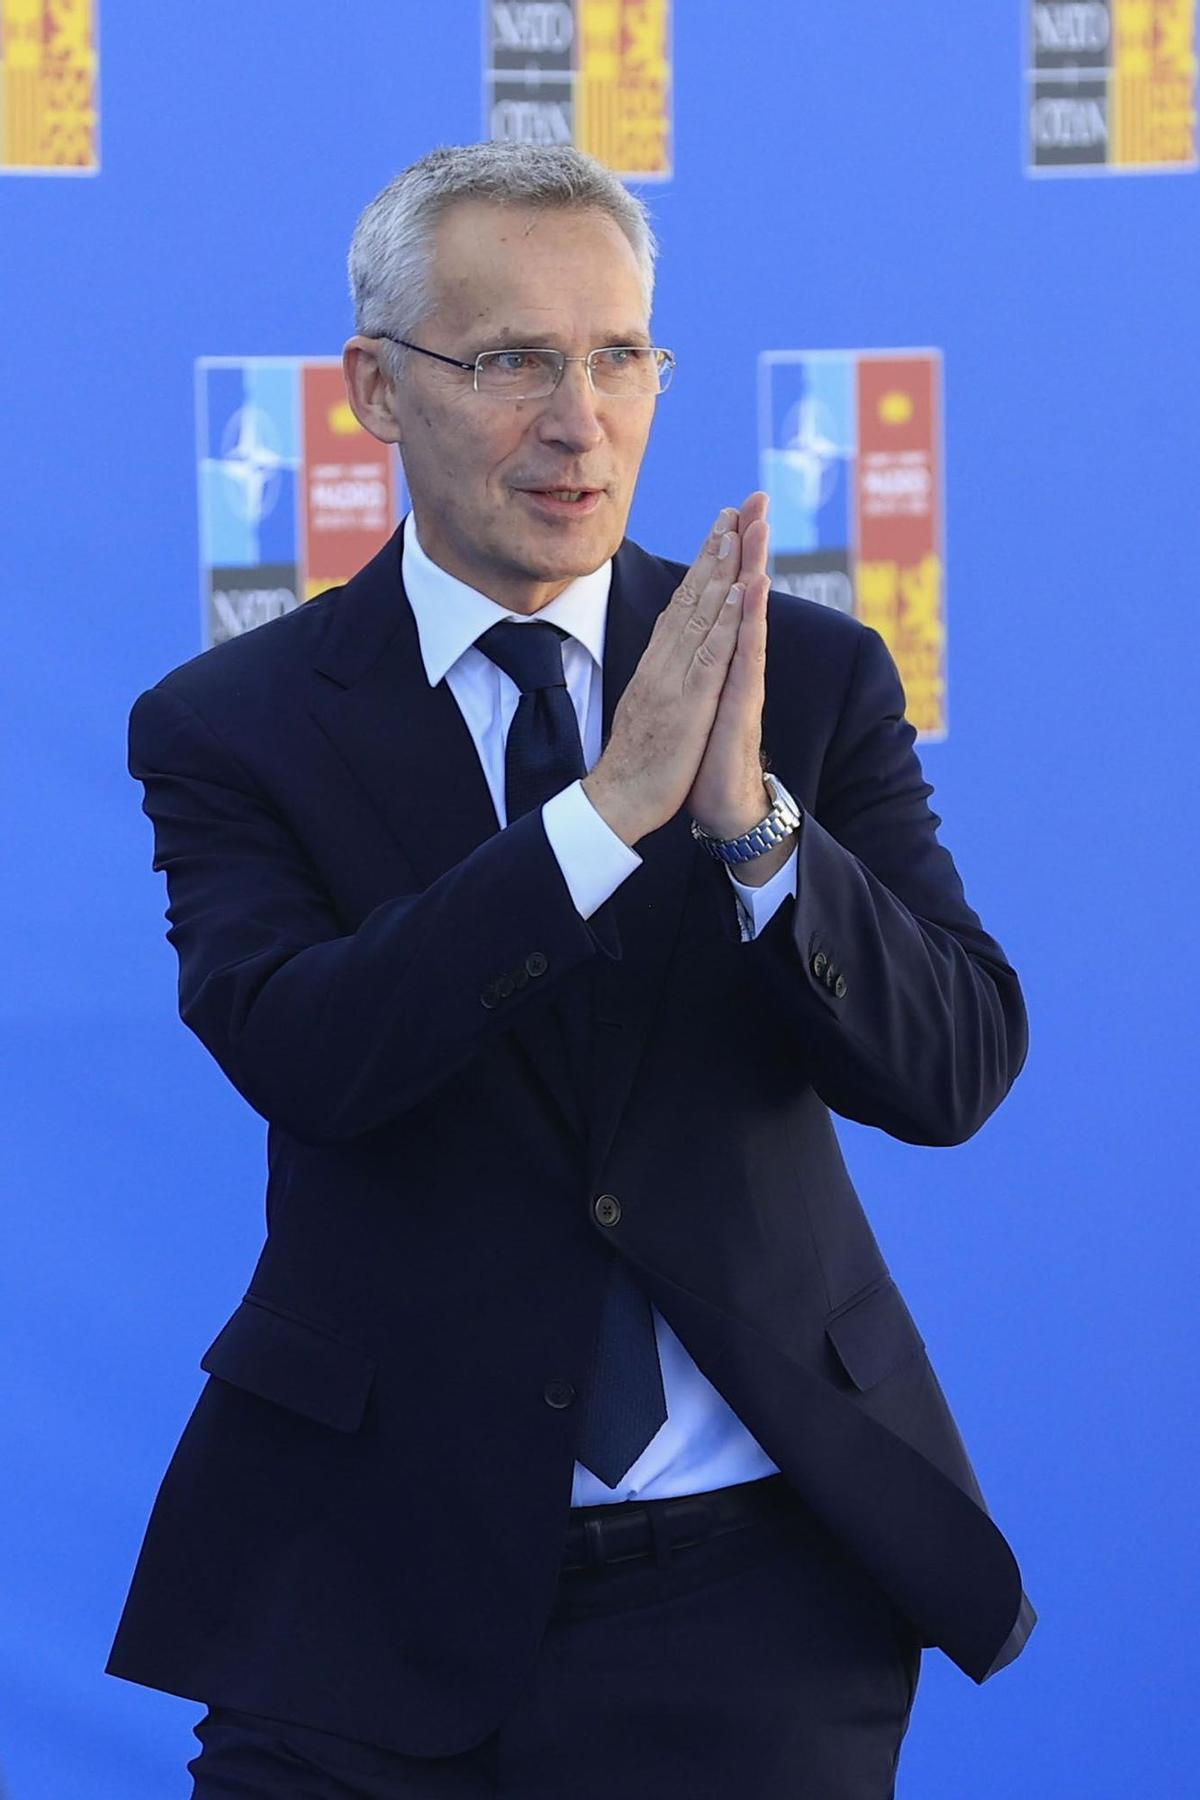 MADRID, 30/06/2022.- El secretario general de la OTAN, Jens Stoltenberg, a su llegada a la segunda jornada de la cumbre de la OTAN que se celebra este jueves en el recinto de Ifema, en Madrid. EFE/Zipi